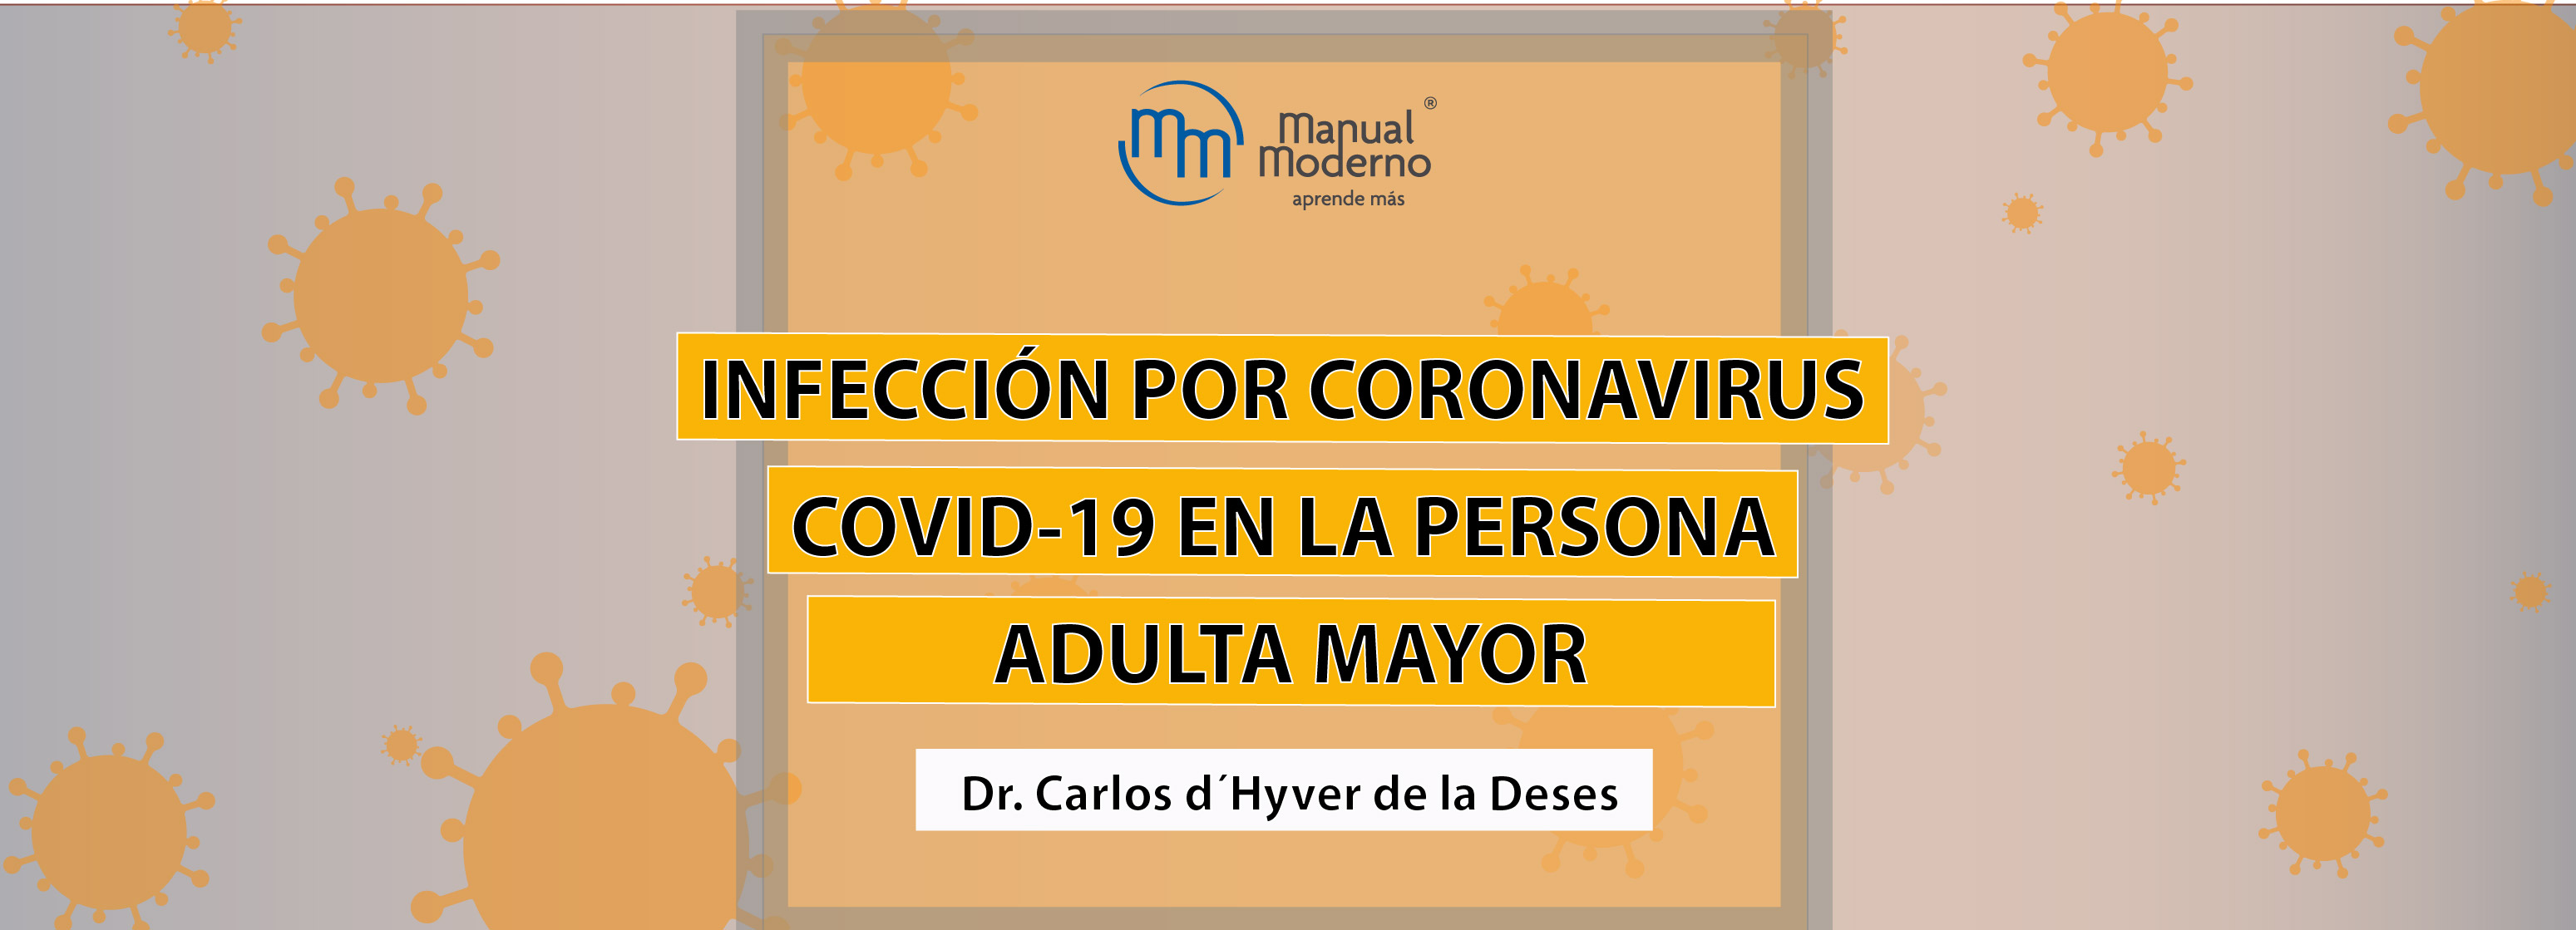 INFECCIÓN POR CORONAVIRUS COVID-19 EN LA PERSONA ADULTA MAYOR